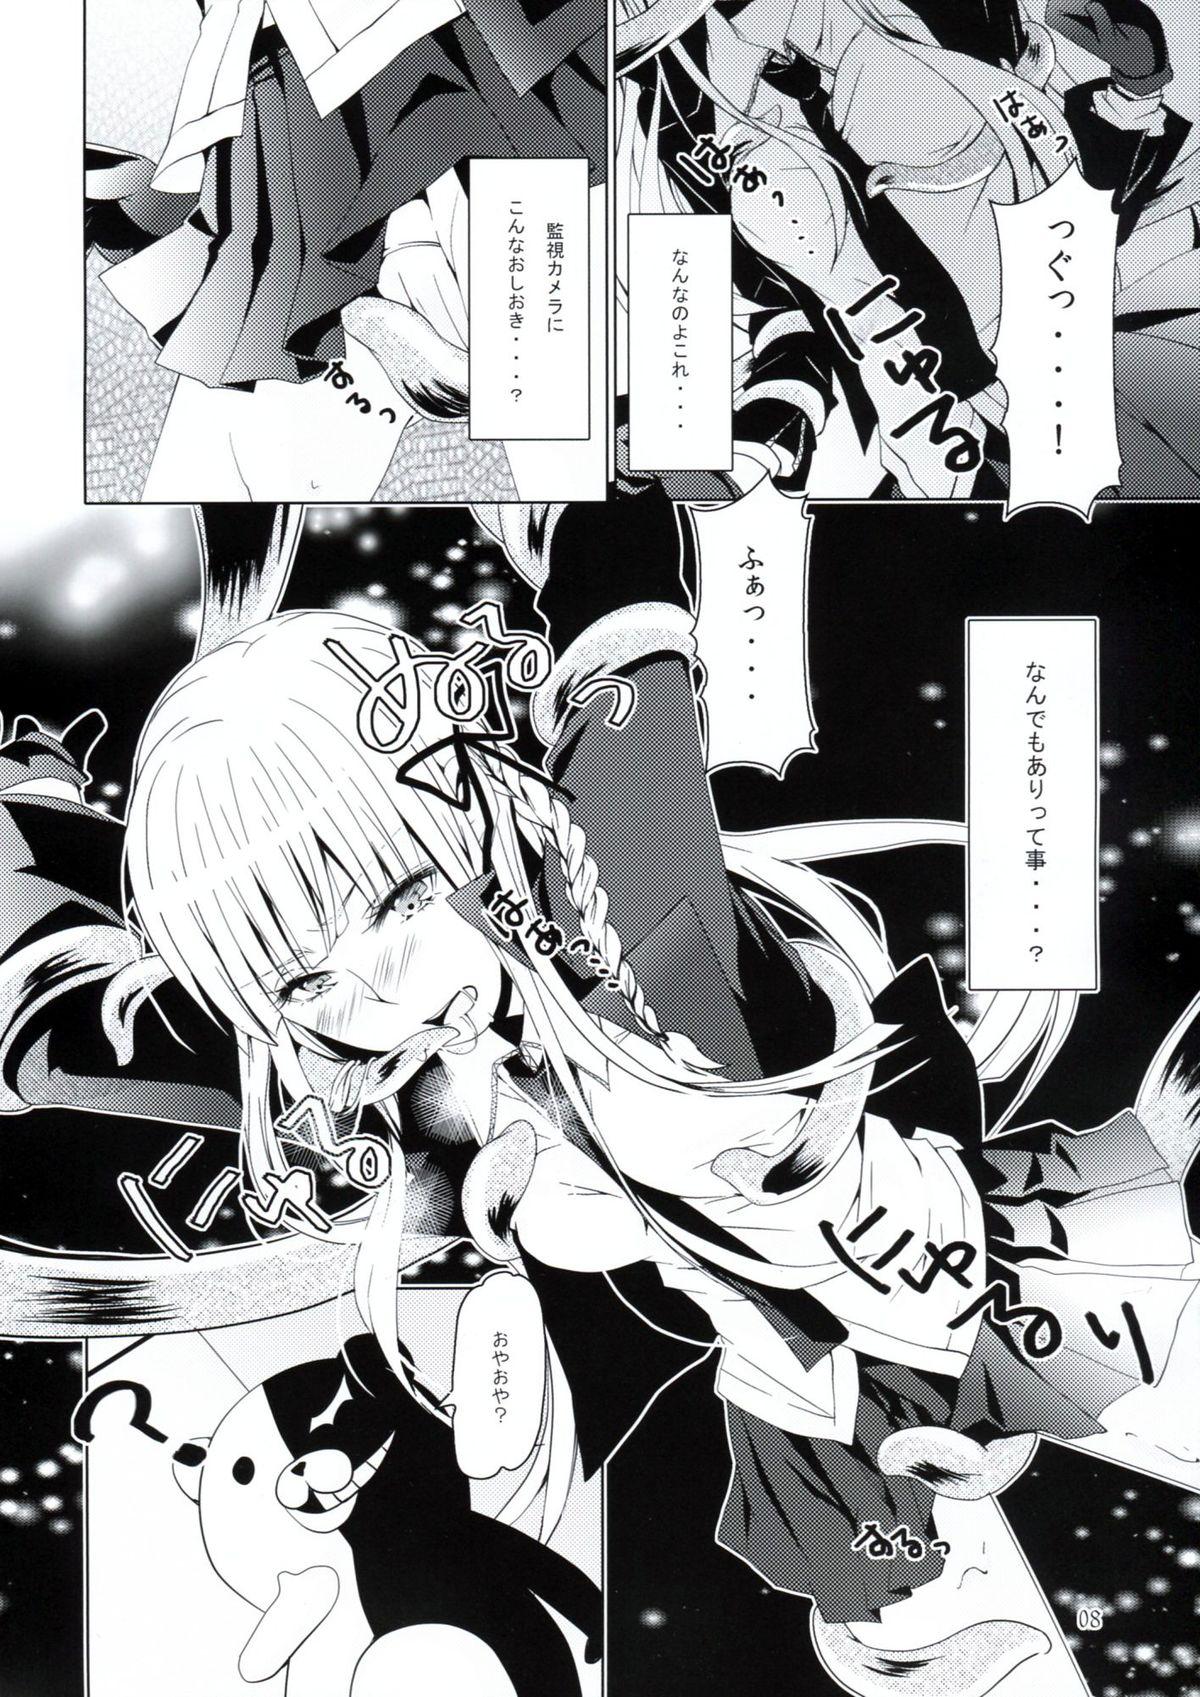 Gozo Yukari no Me ni wa Kiri ga Furu - Danganronpa Bald Pussy - Page 7